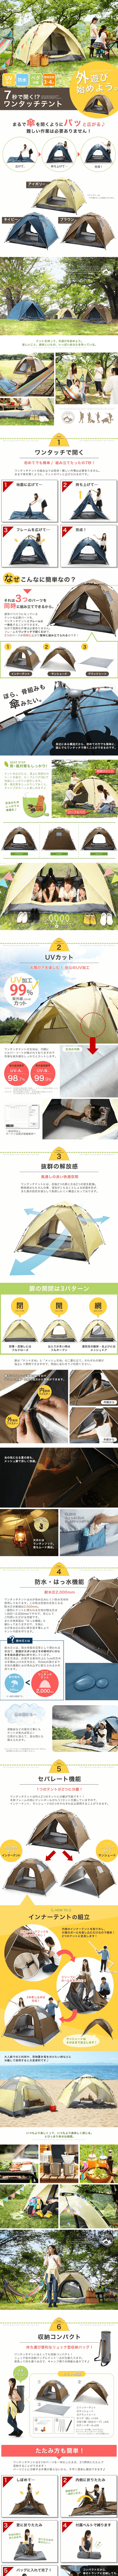 キャンプテント_pc_1